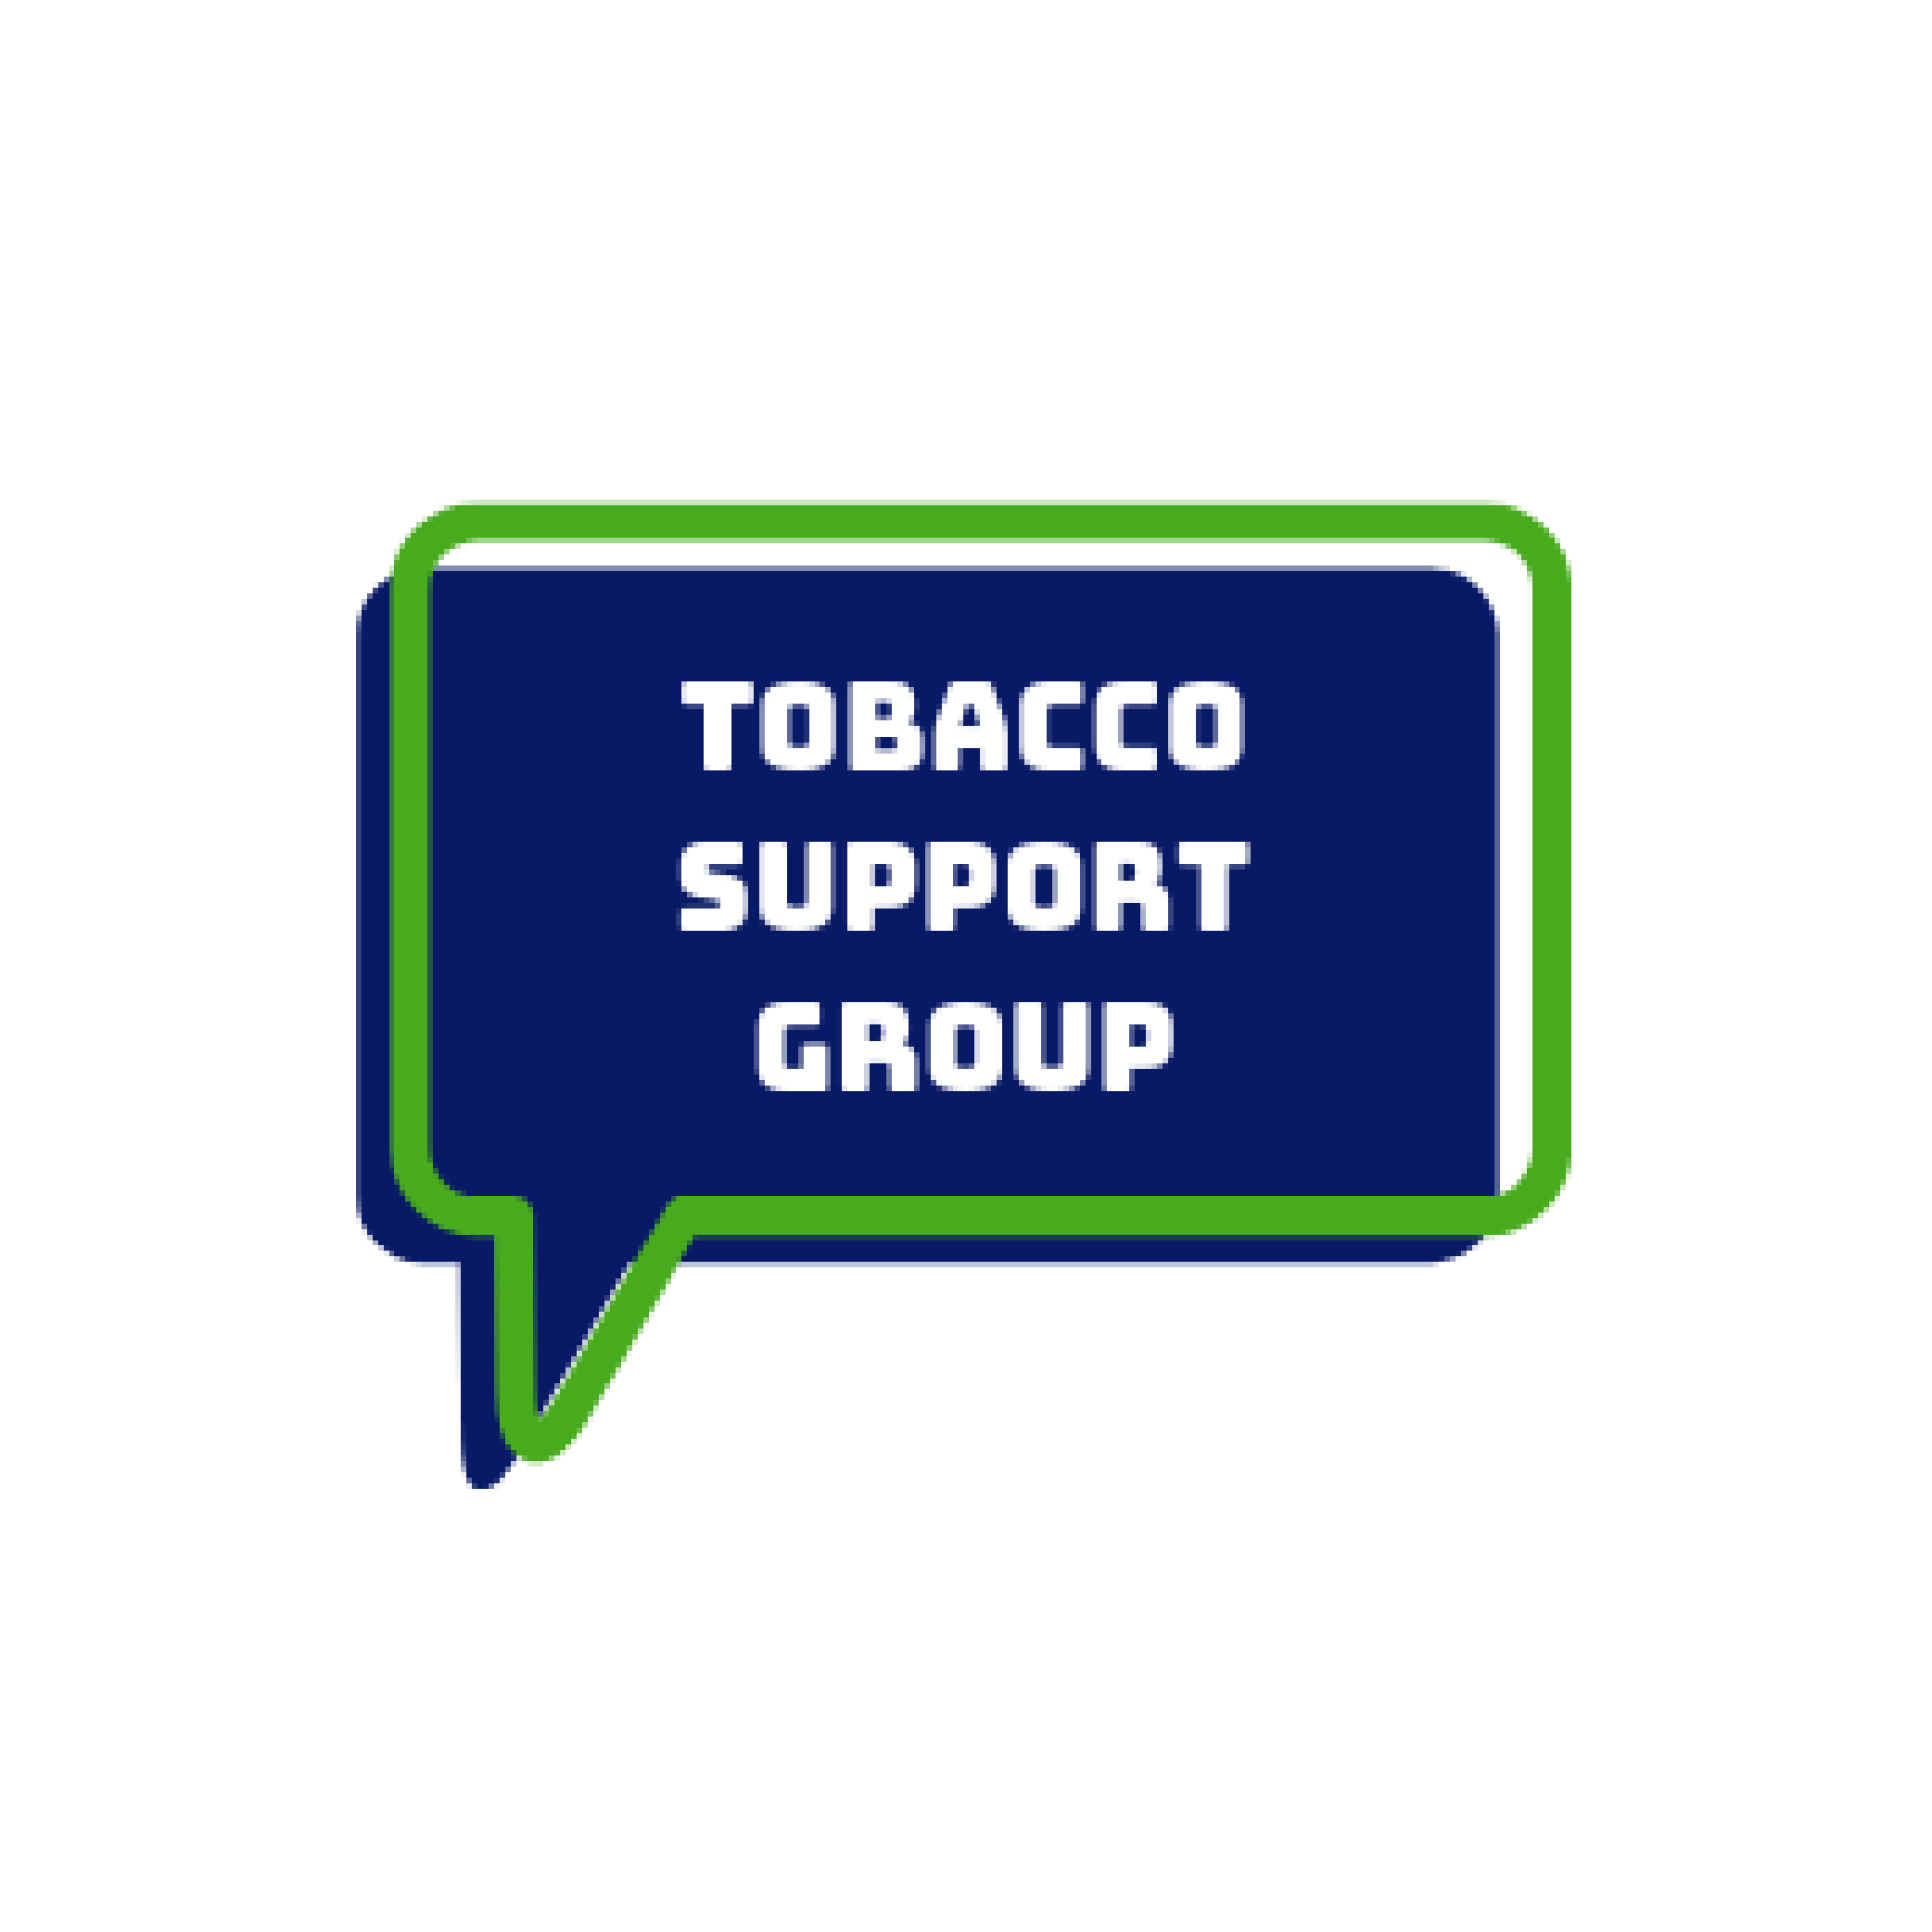 شعار مجموعة دعم التبغ